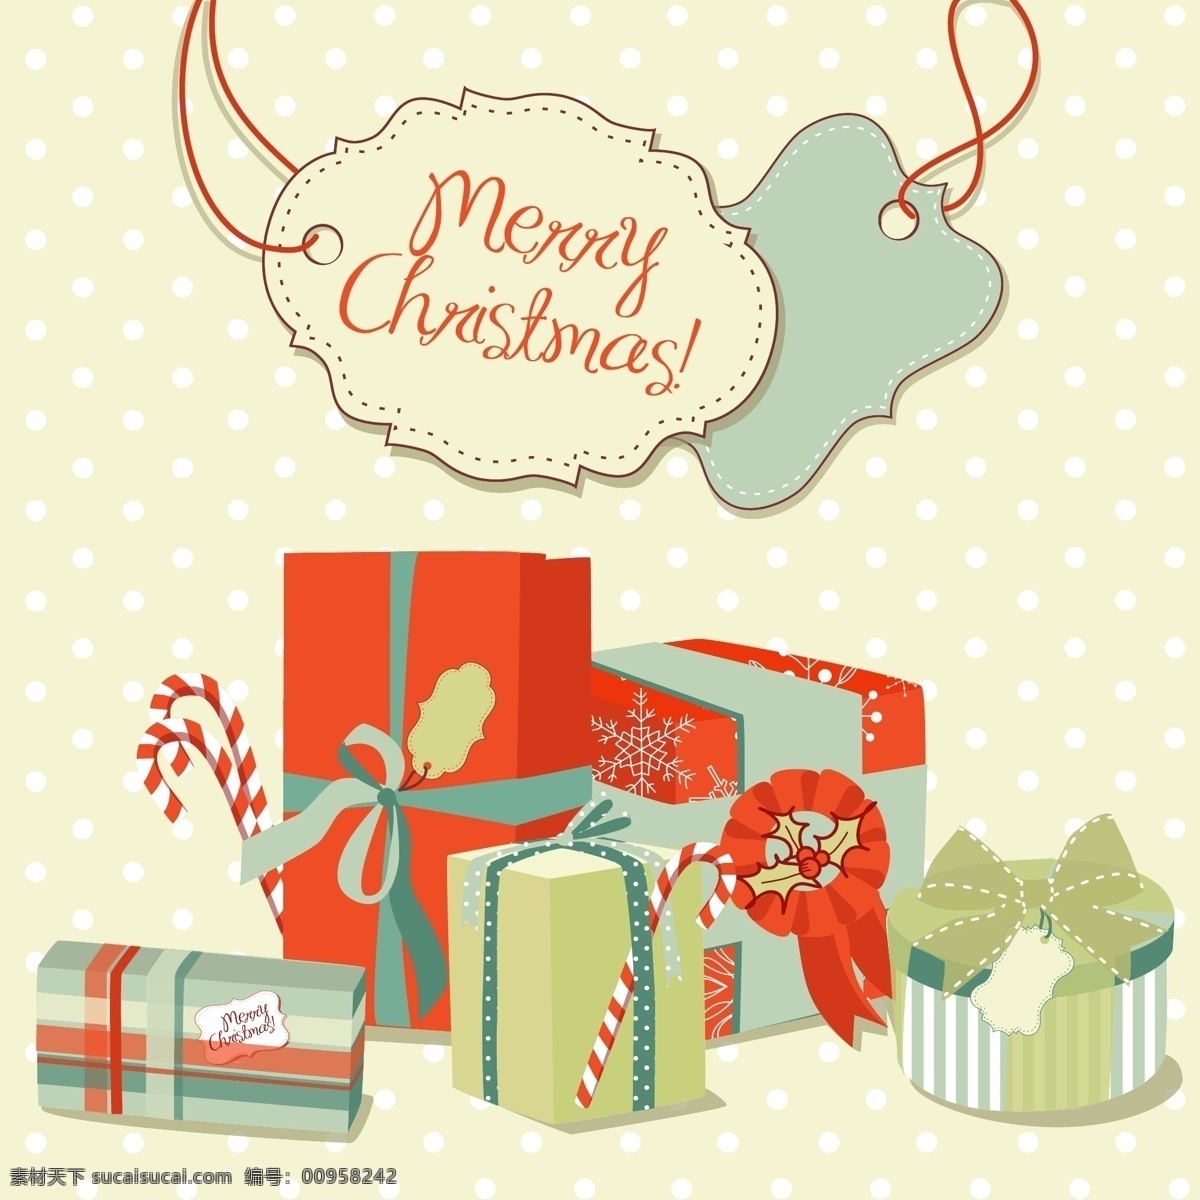 圣诞节 礼物 白色 斑点 背景 矢量 素 标签 吊牌 花纹 礼盒 圣诞节礼物 白色斑点 节日素材 其他节日